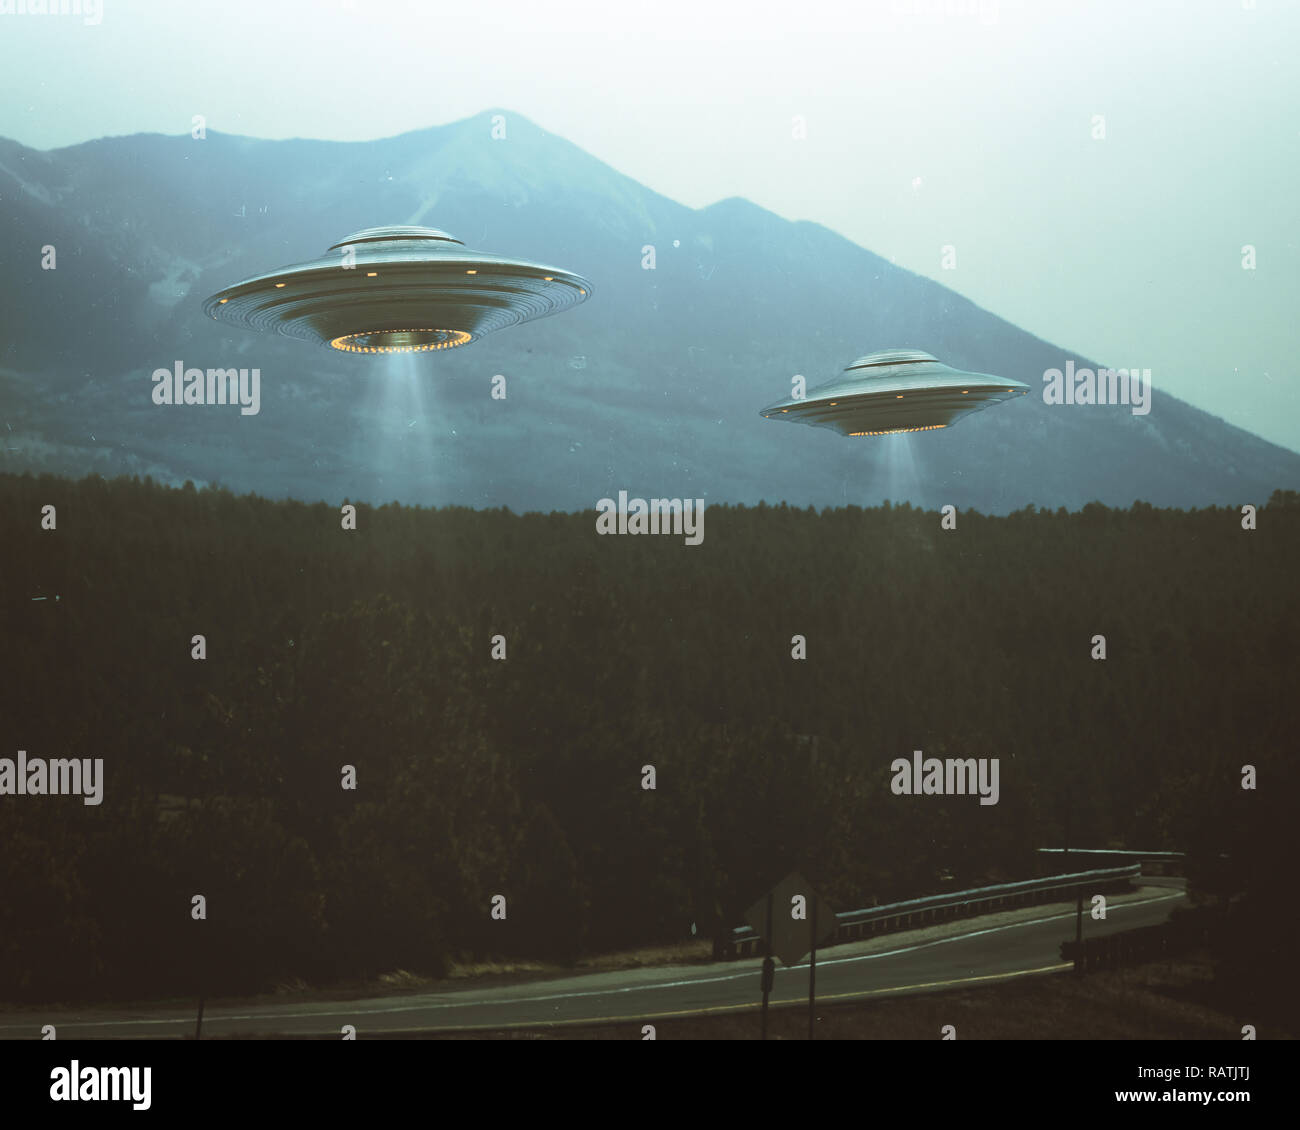 Oggetto Volante non Identificato. Due UFO volare sopra una strada tra gli alberi. 3D illustrazione foto retrò vintage. Rumore e difetti della vecchia pellicola fotografica. Foto Stock